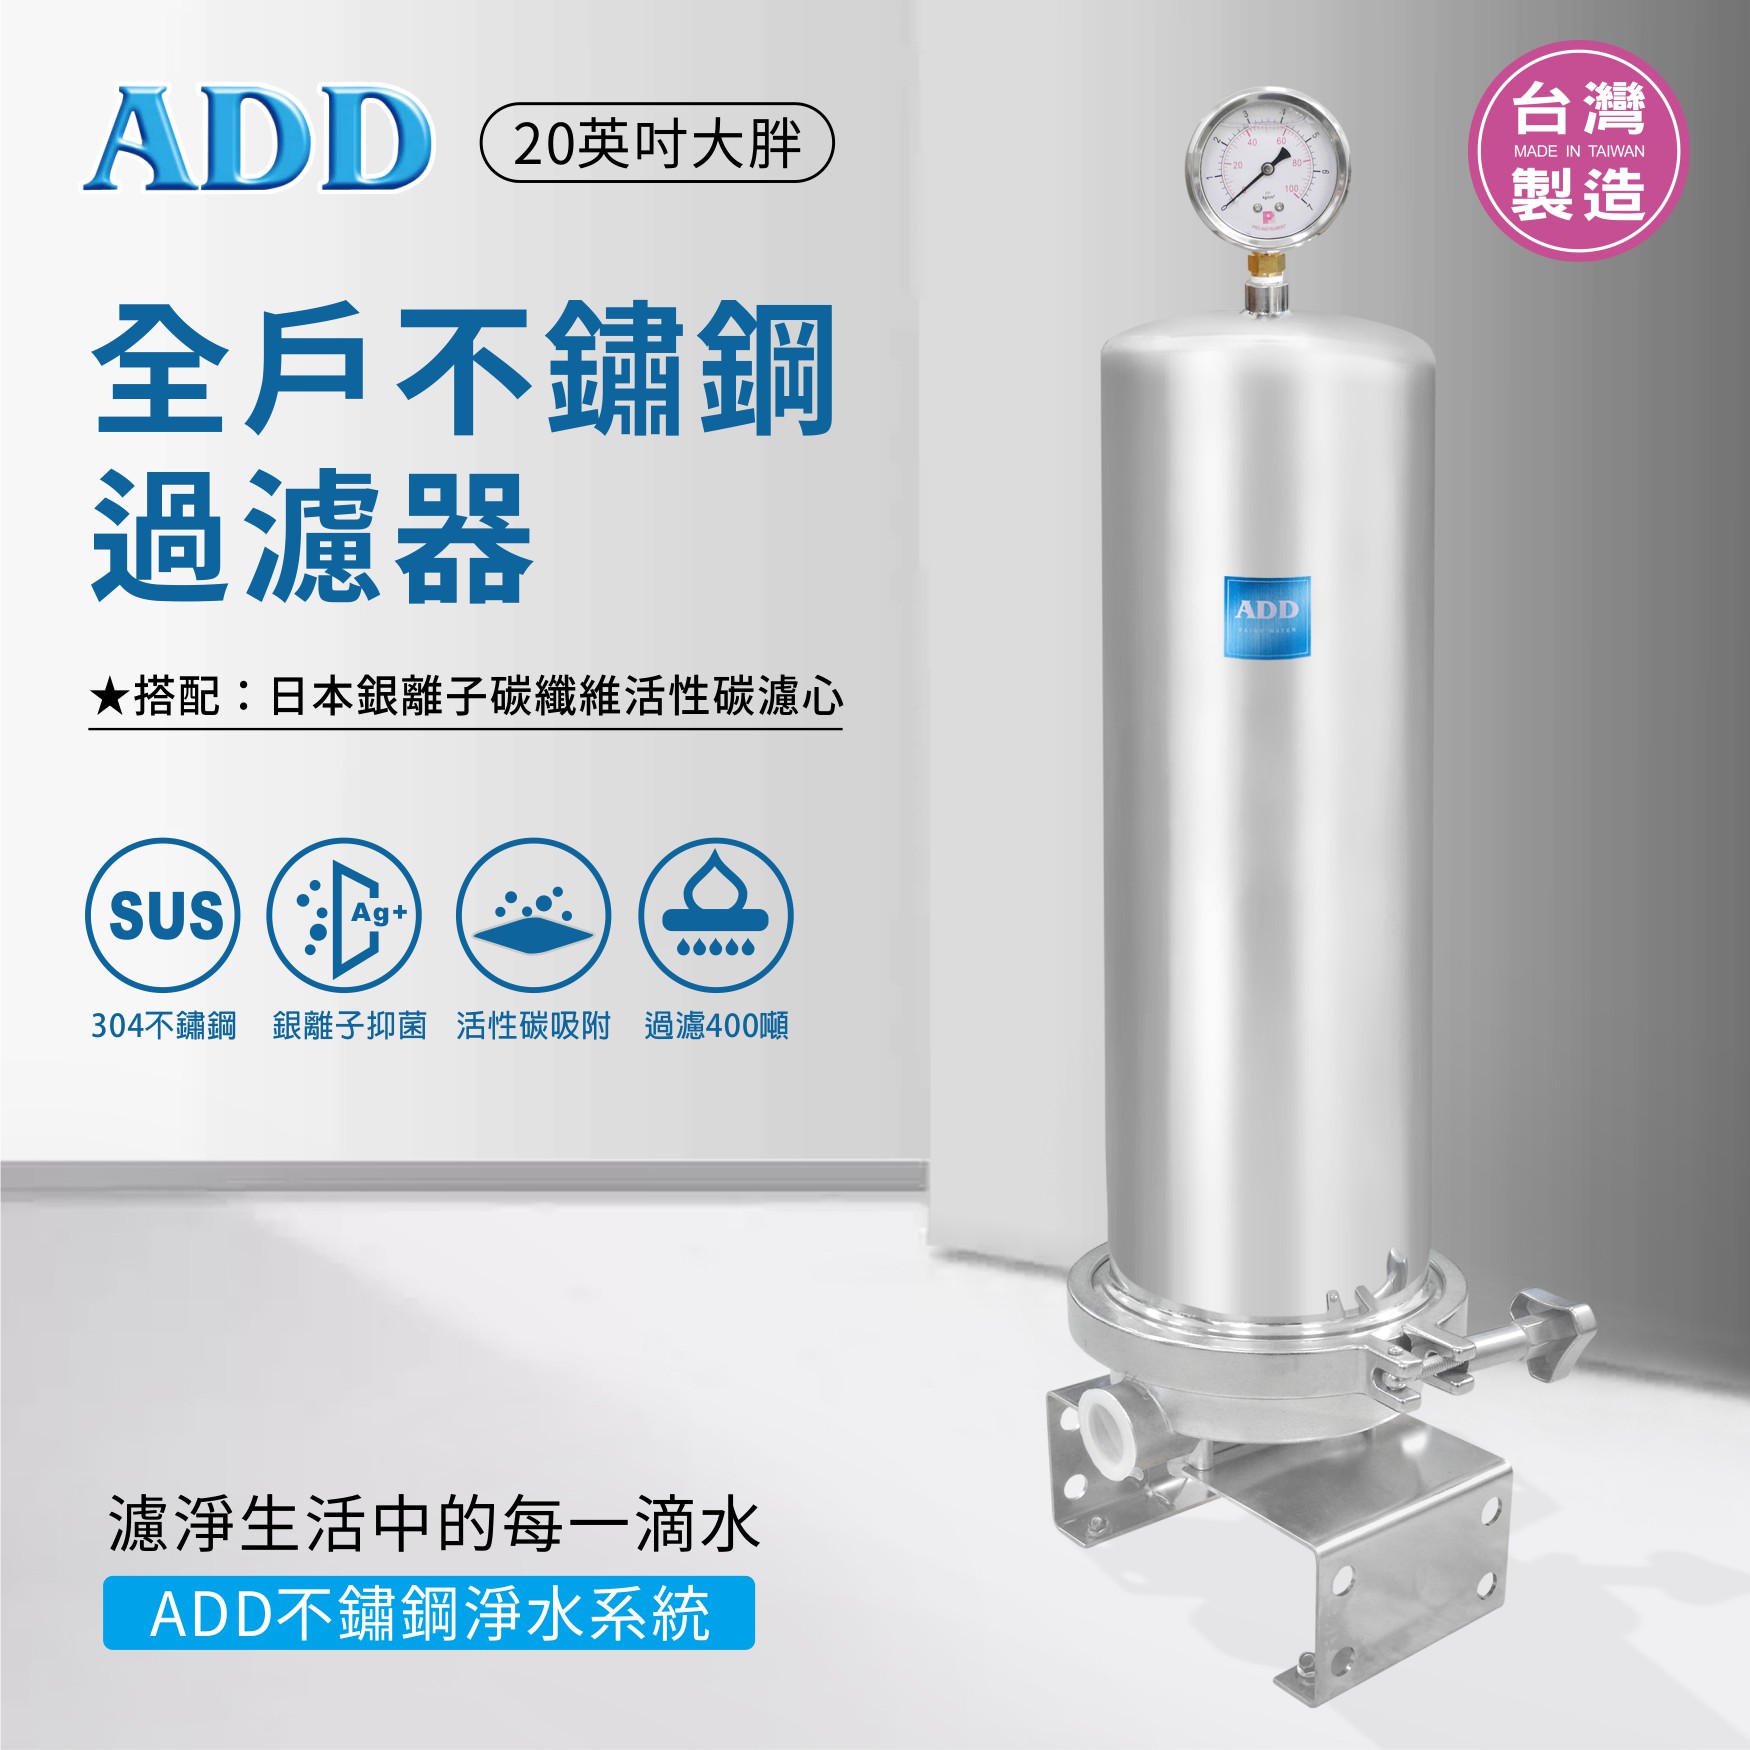 ADD-全戶不鏽鋼過濾器(20英吋大胖)+日本銀離子碳纖維活性碳濾心